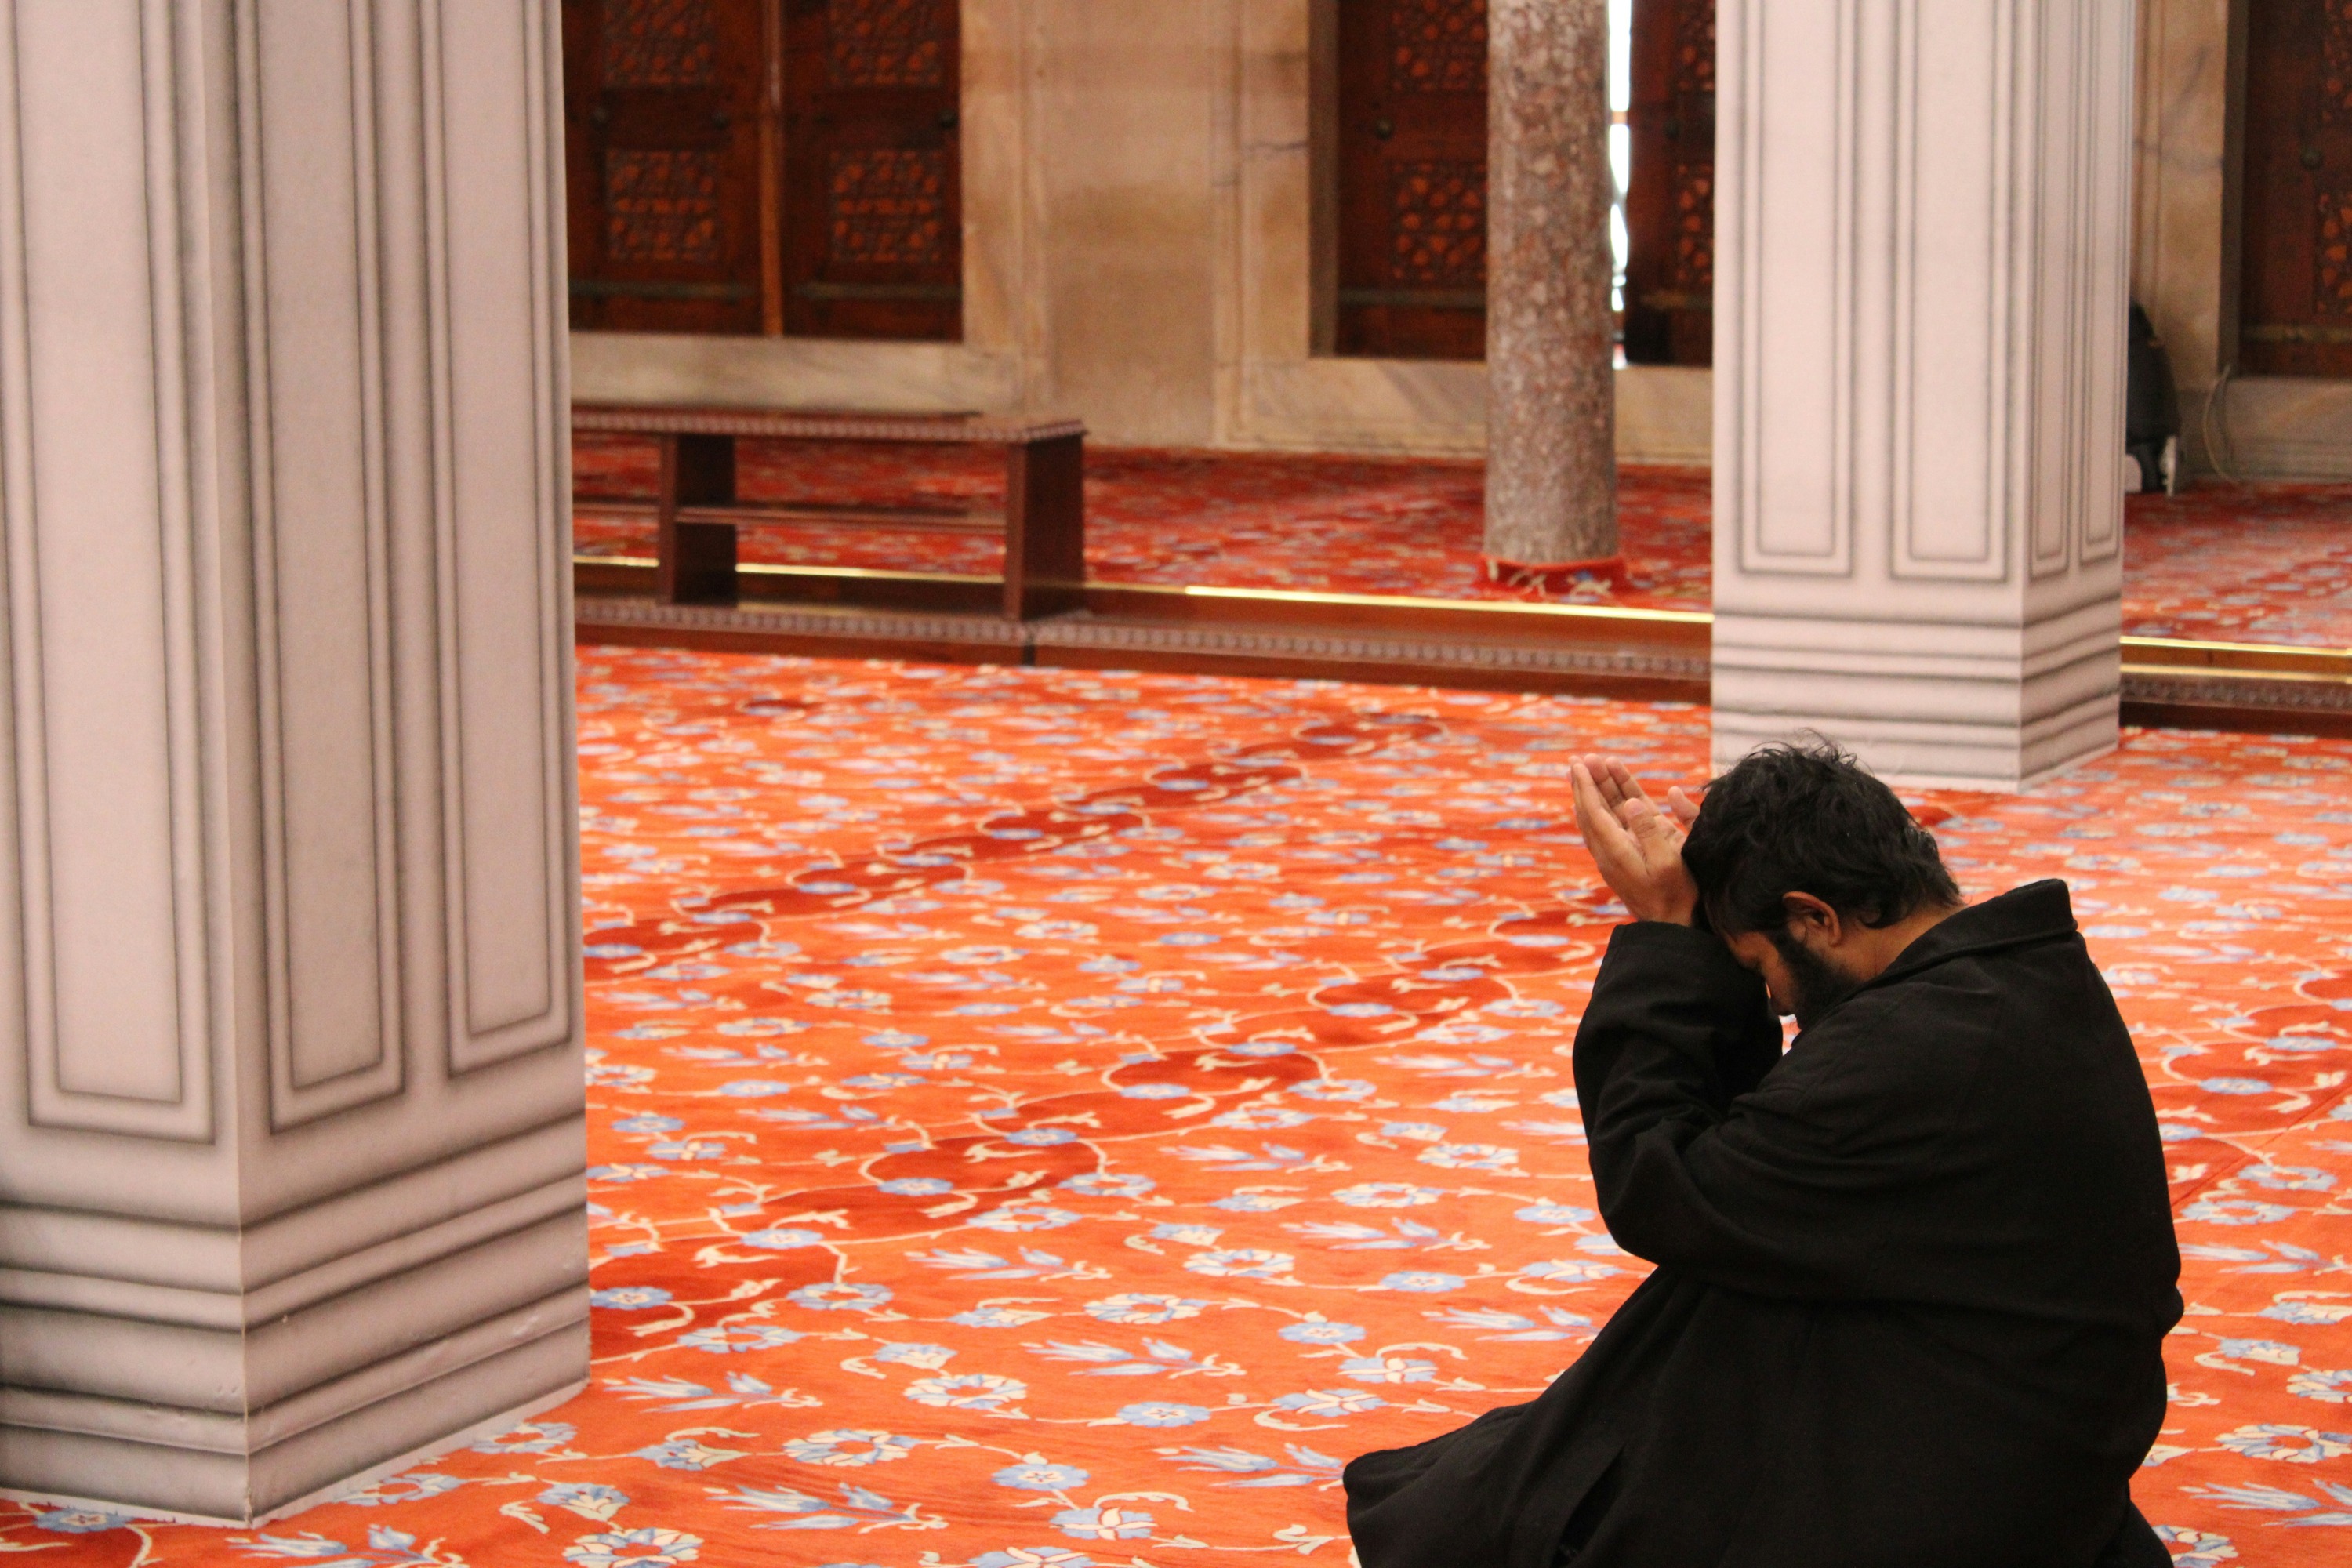 Bacaan Doa Isra Mi'raj, Lengkap dengan Arti dan Tata Cara Melakukannya, Muslim Wajib Tahu!